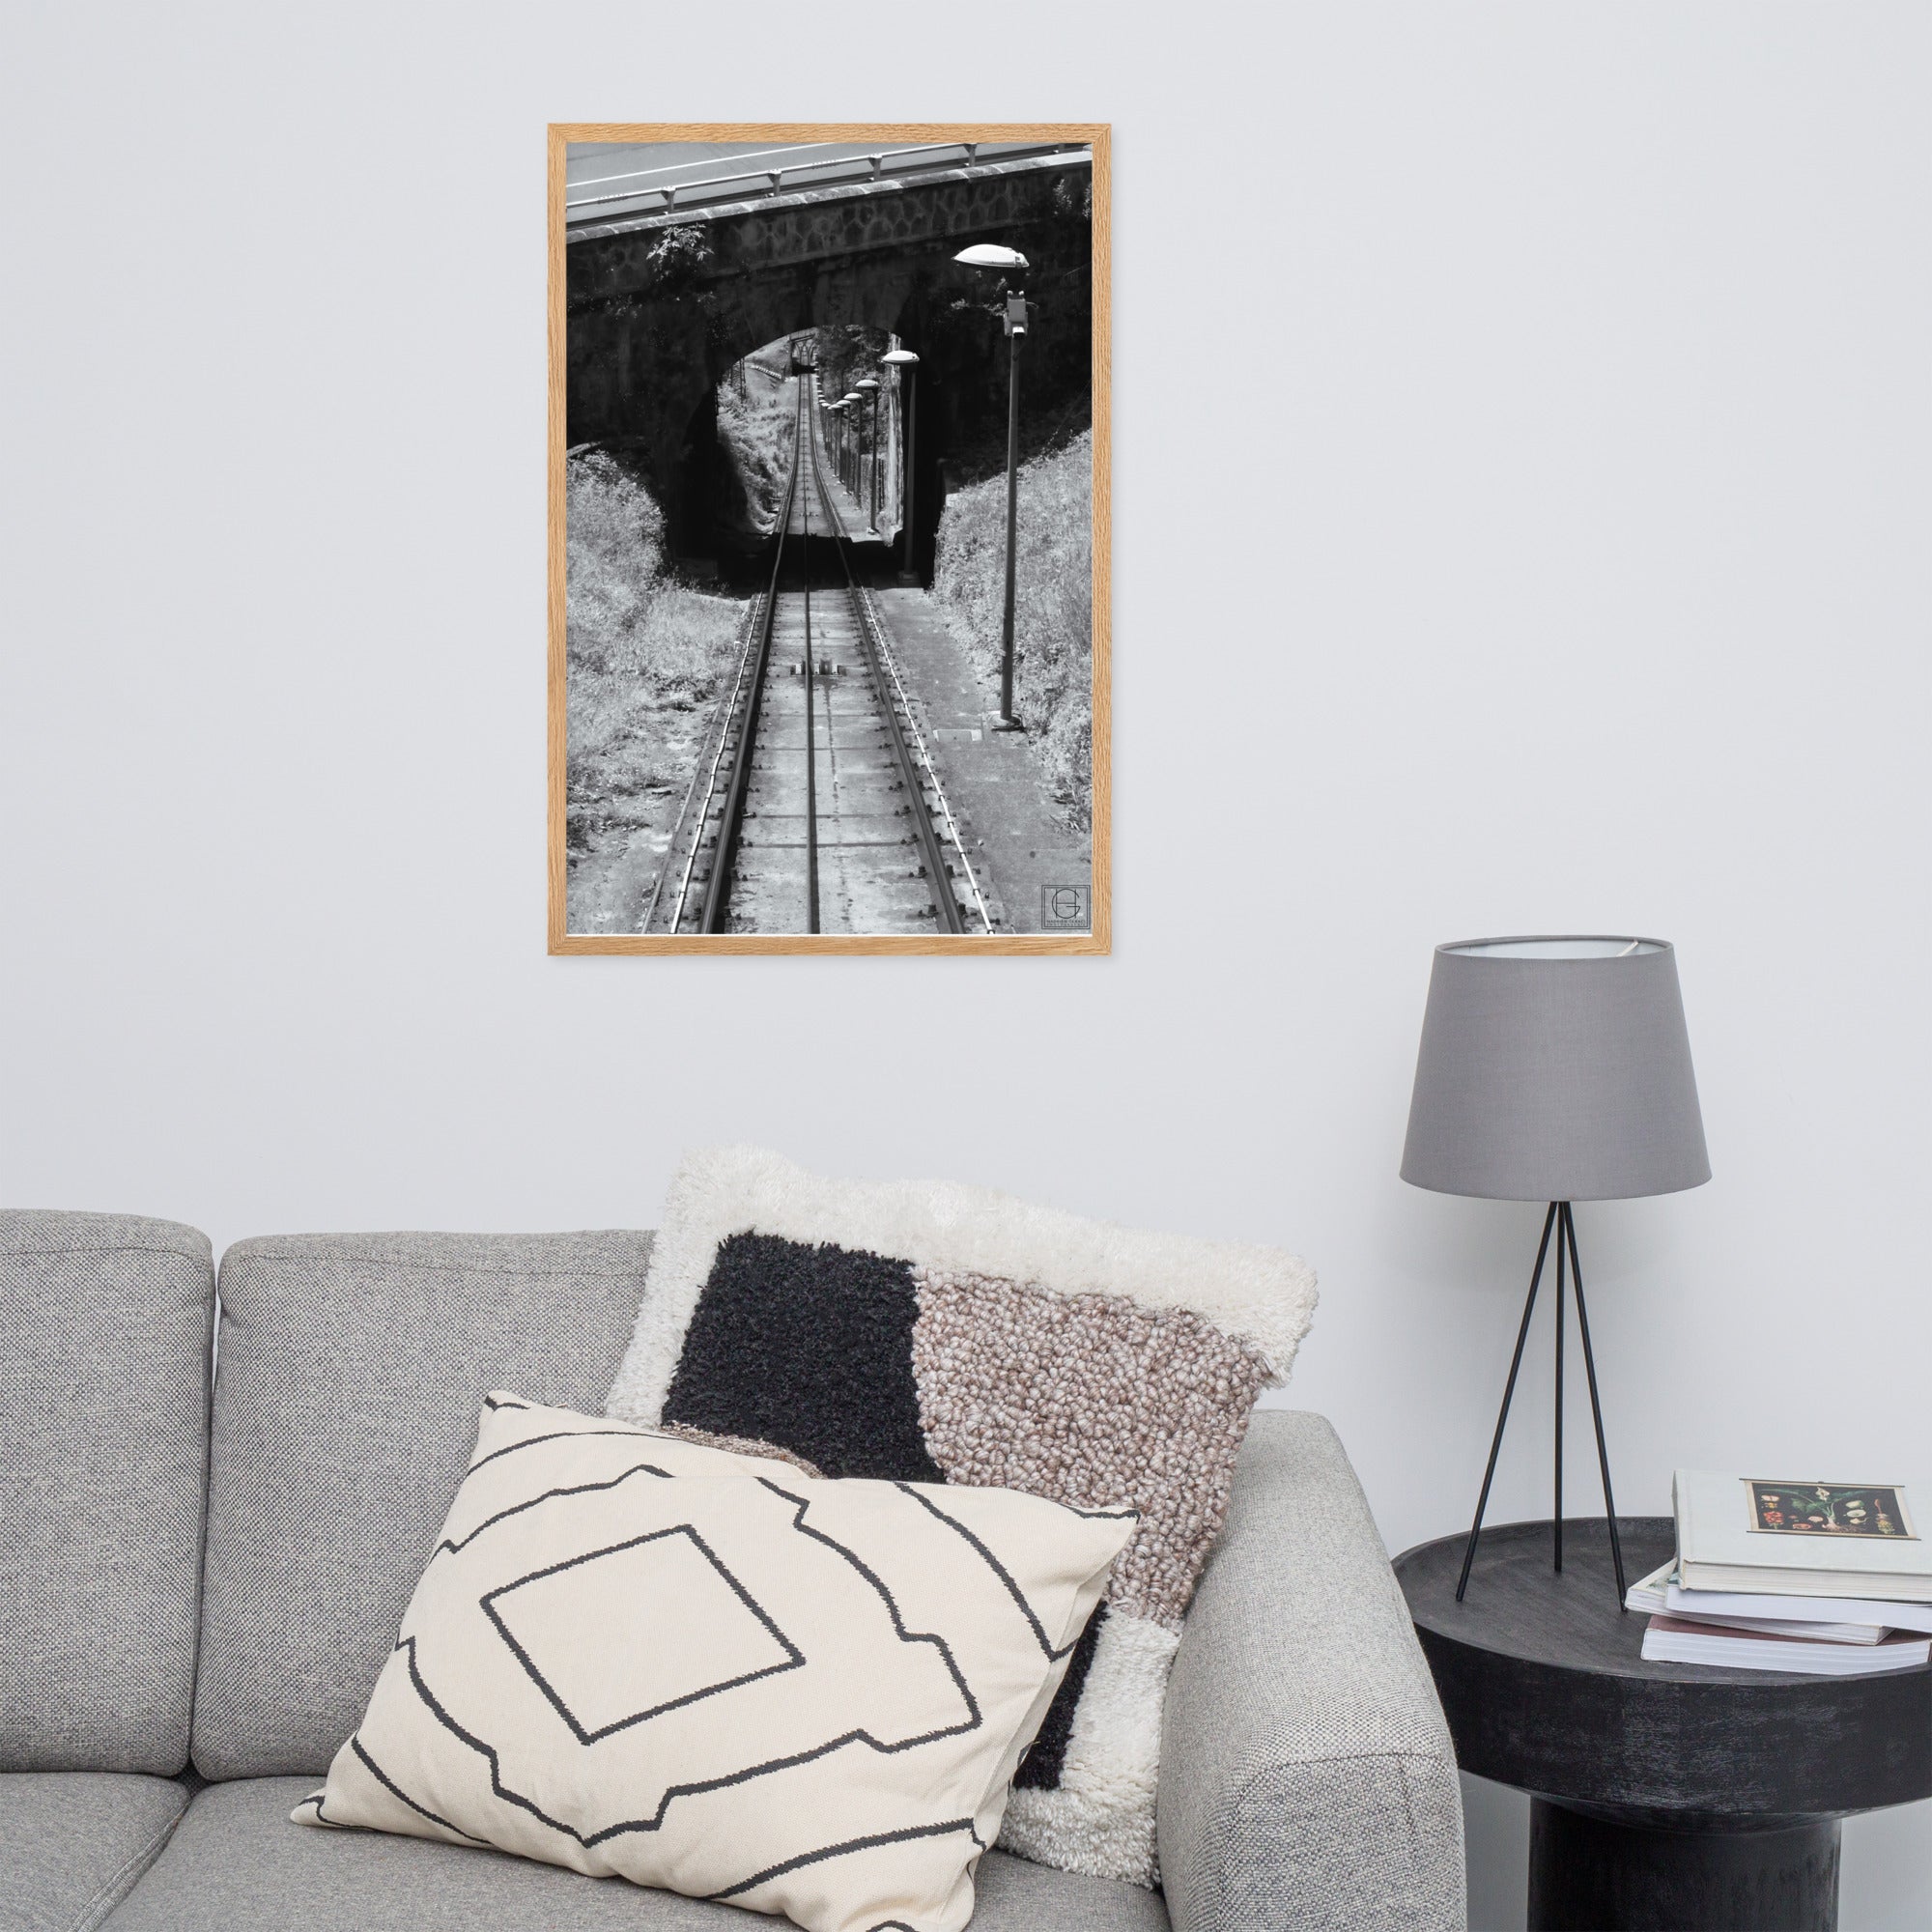 Photographie encadrée 'La Descente' par Hadrien Geraci, montrant une vue plongeante sur les rails du funiculaire Artxanda, impression de qualité musée sur papier mat épais.